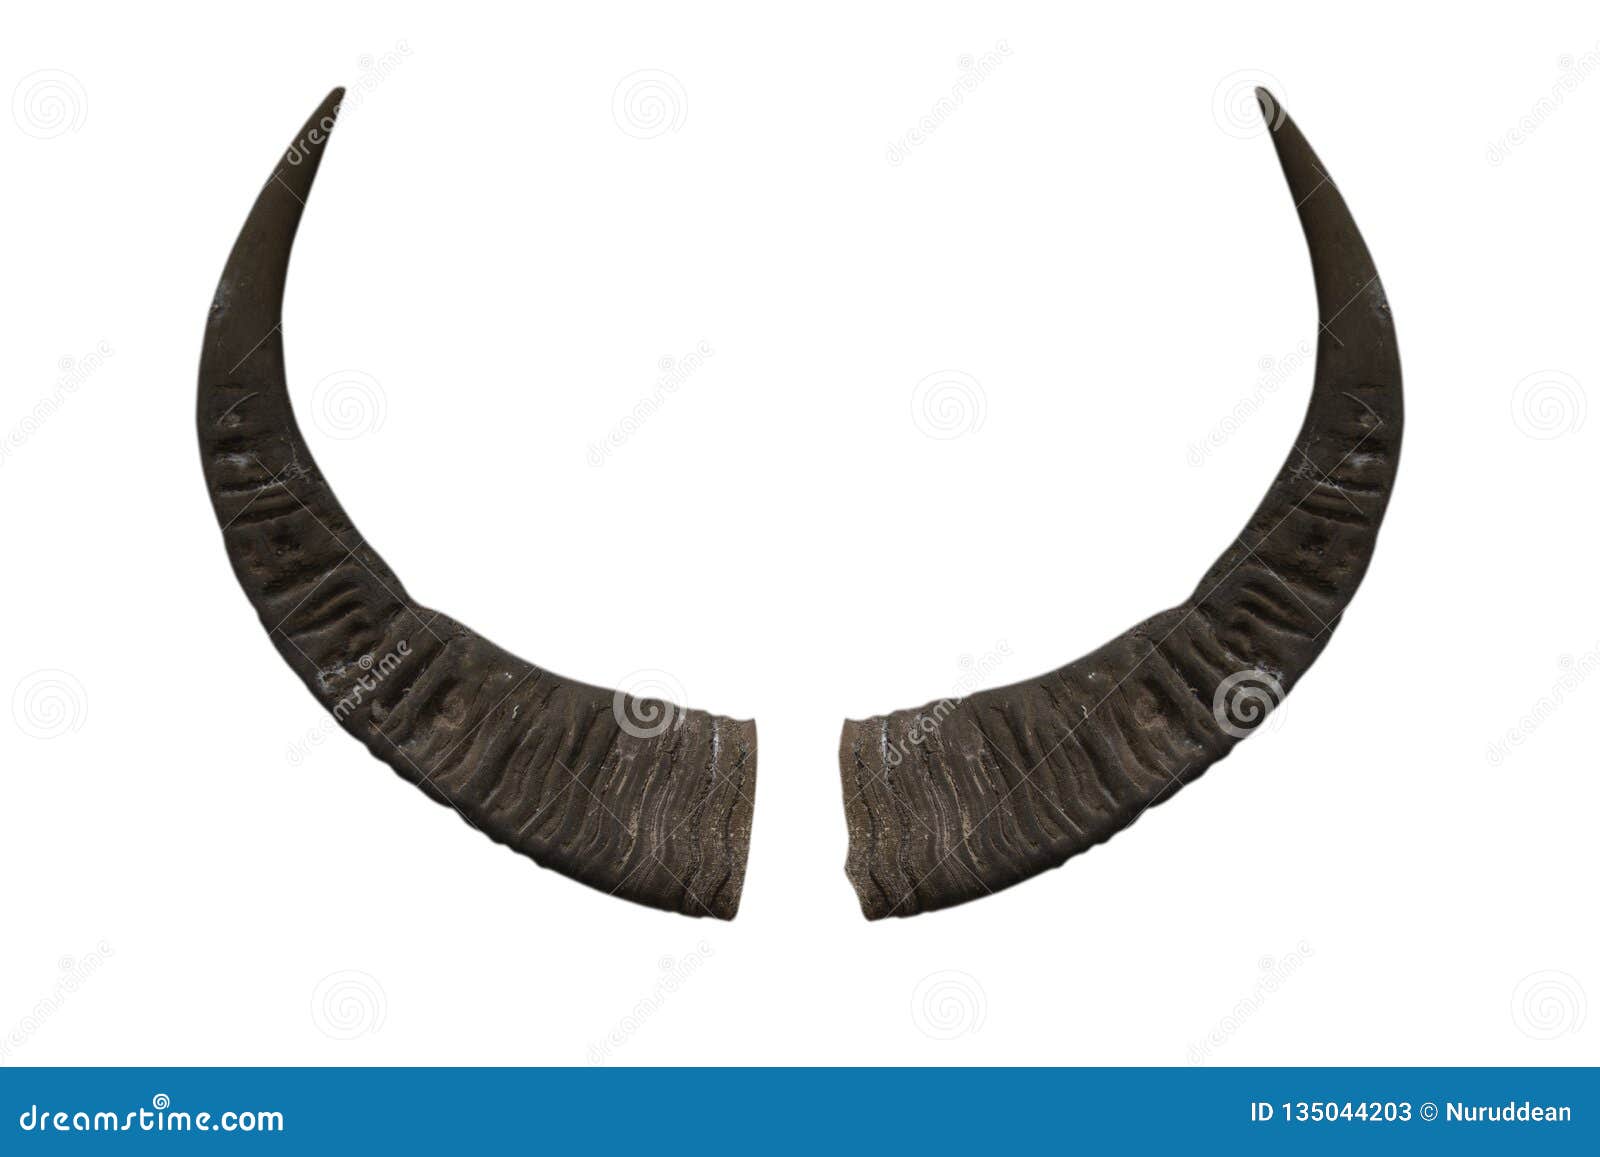 Buffalo Horn Isolated on White Background Stock Image - Image of farm ...